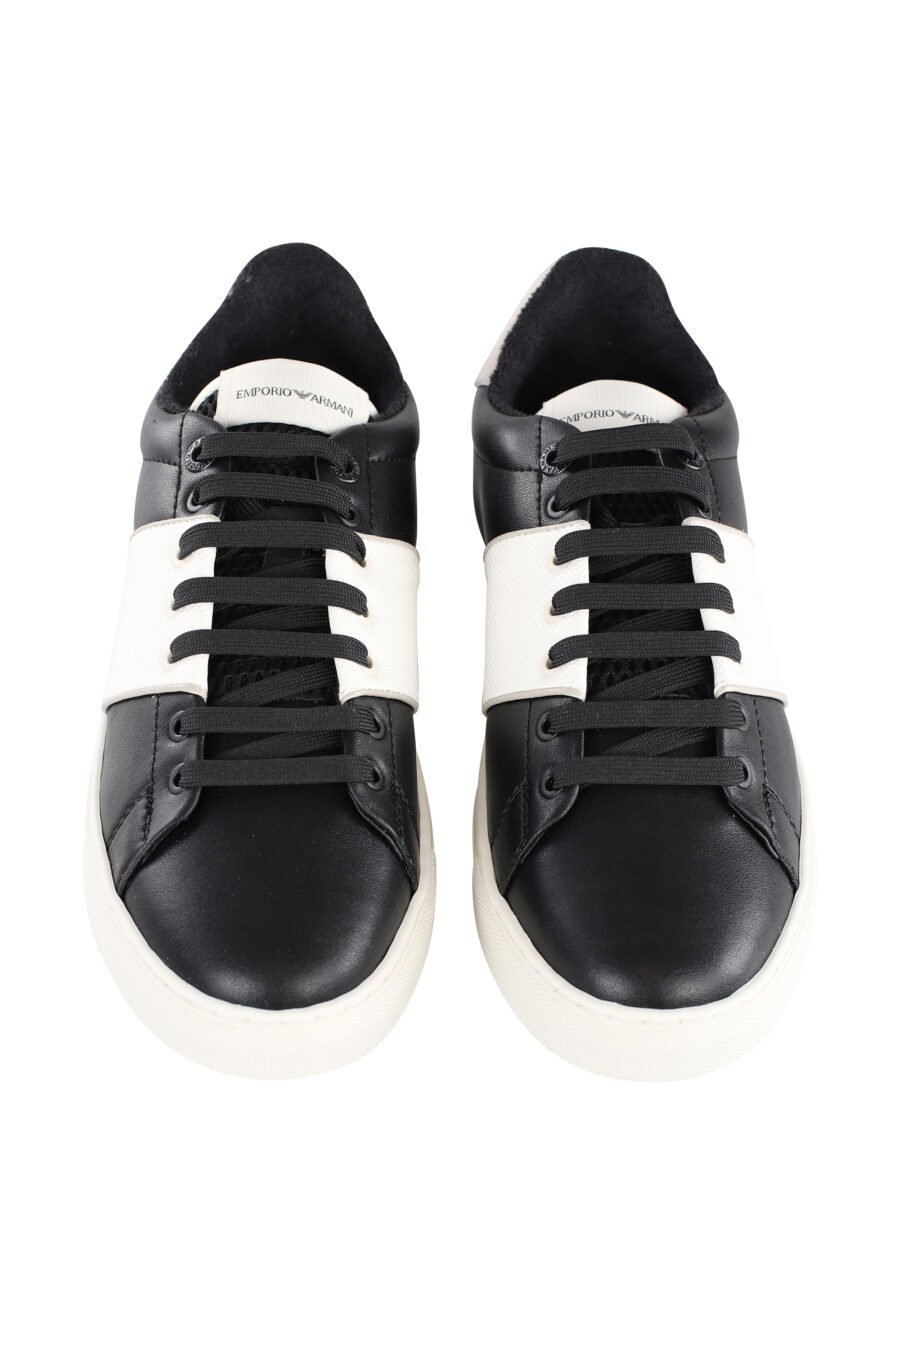 Zapatillas bicolor blancas y negras con logo bordado con interior de felpa - IMG 7093